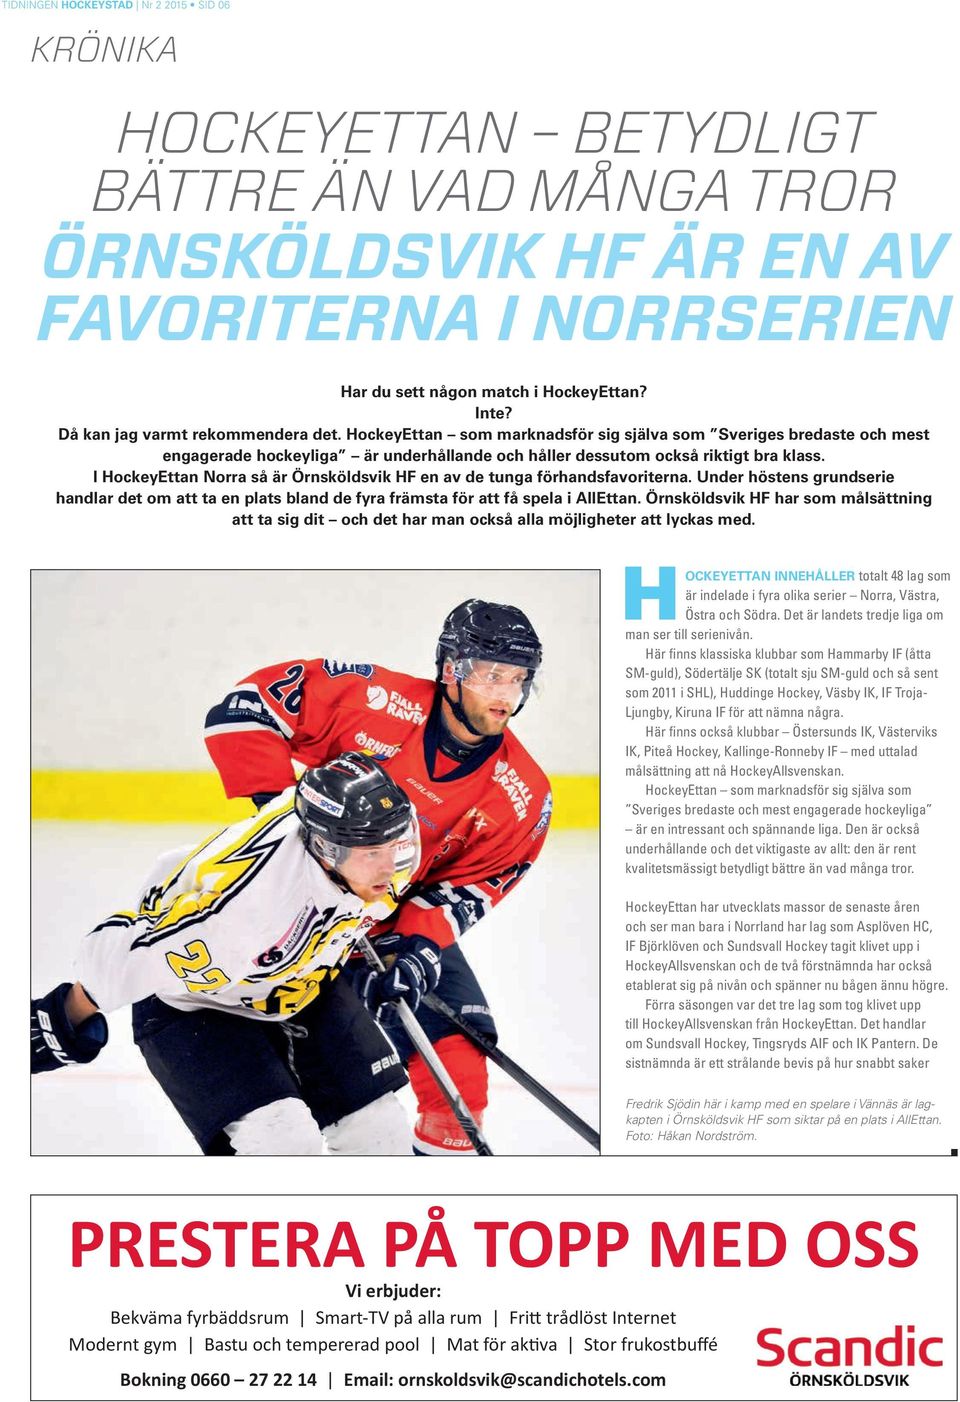 I HockeyEttan orra så är Örnsköldsvik HF en av de tunga förhandsfavoriterna. Under höstens grundserie handlar det om att ta en plats bland de fyra främsta för att få spela i AllEttan.